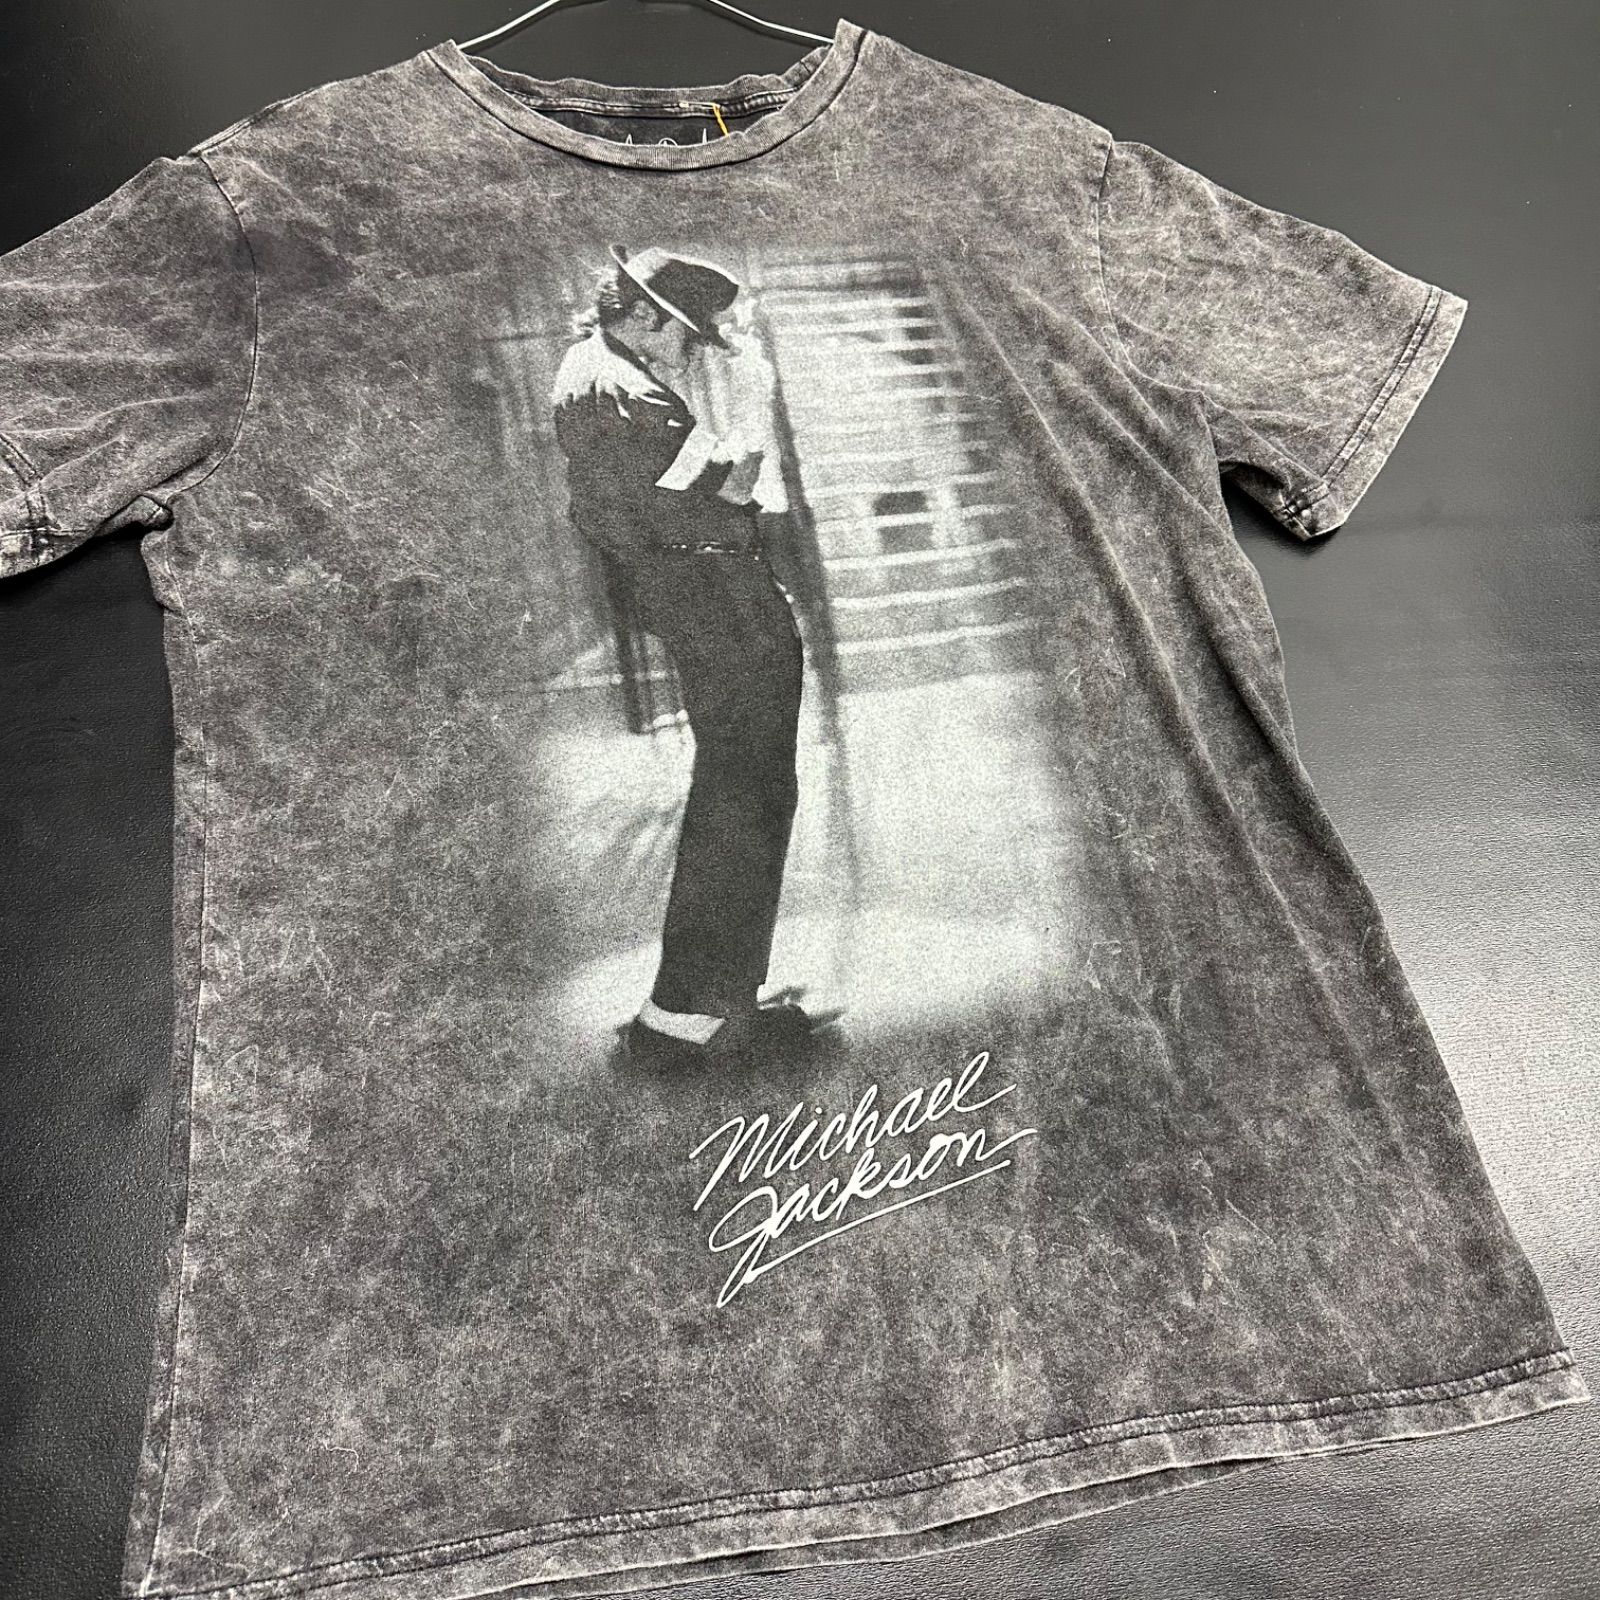 値下げ販売中 マイケルジャクソンTシャツ（白×黒） acsenda.com